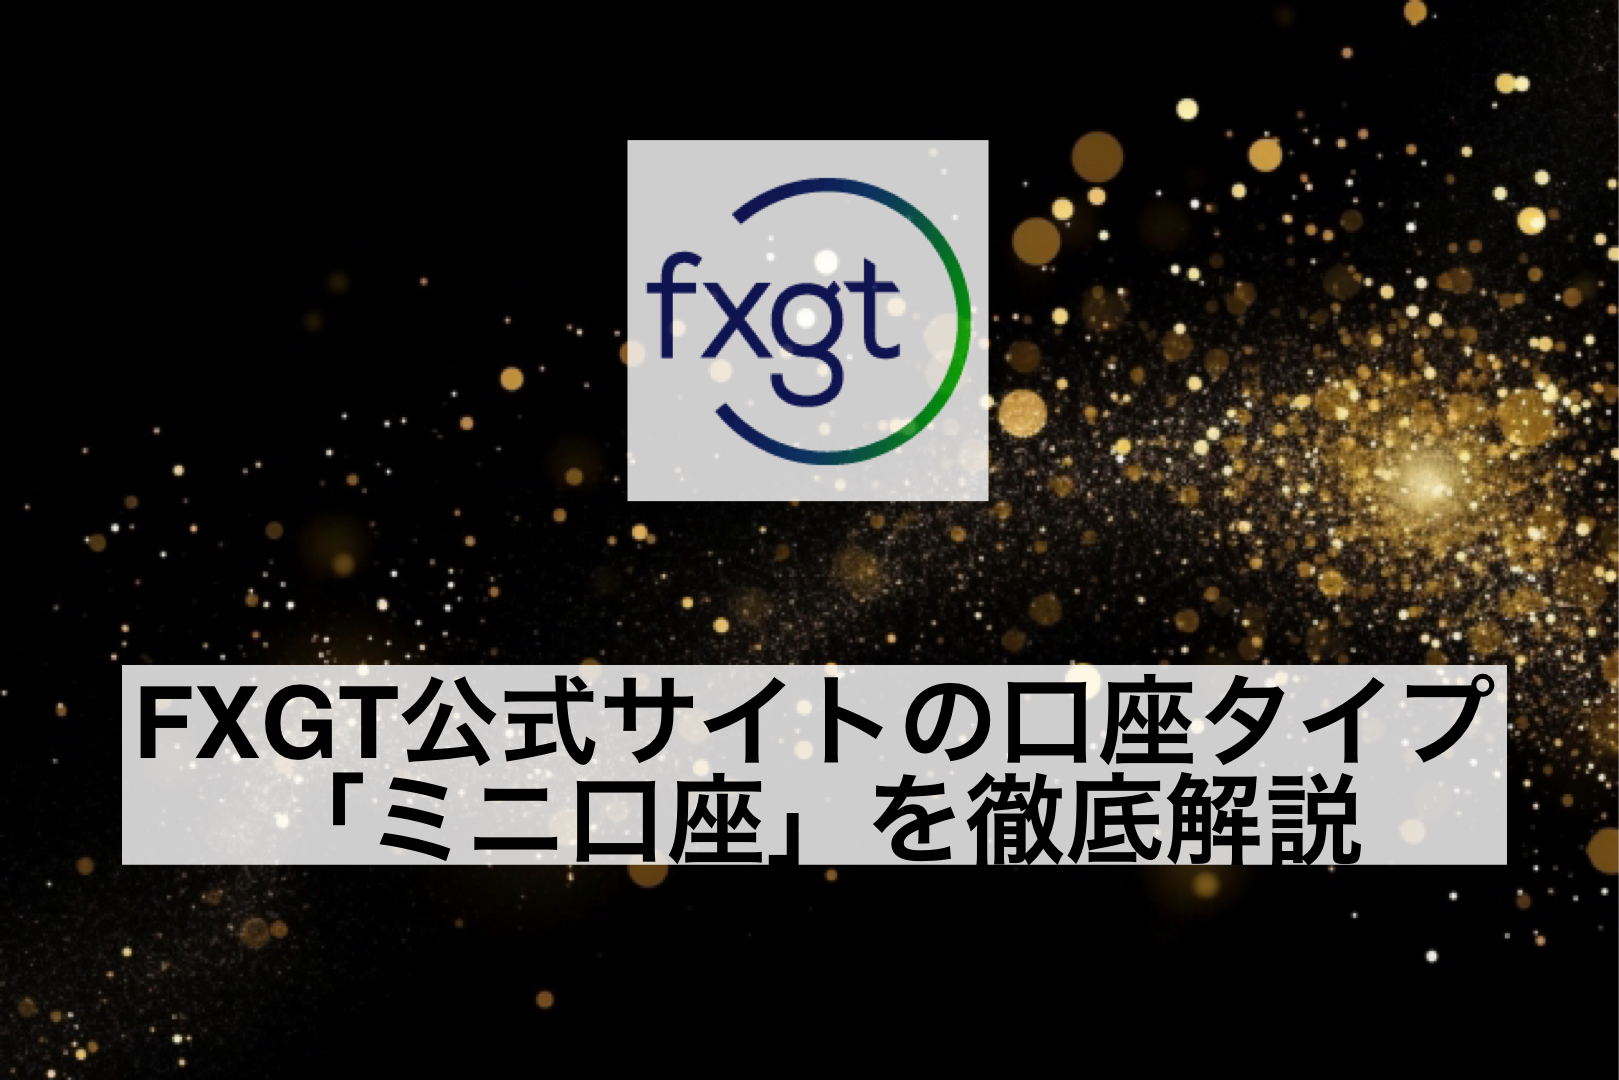 FXGT公式サイトの口座タイプ「ミニ口座」を徹底解説